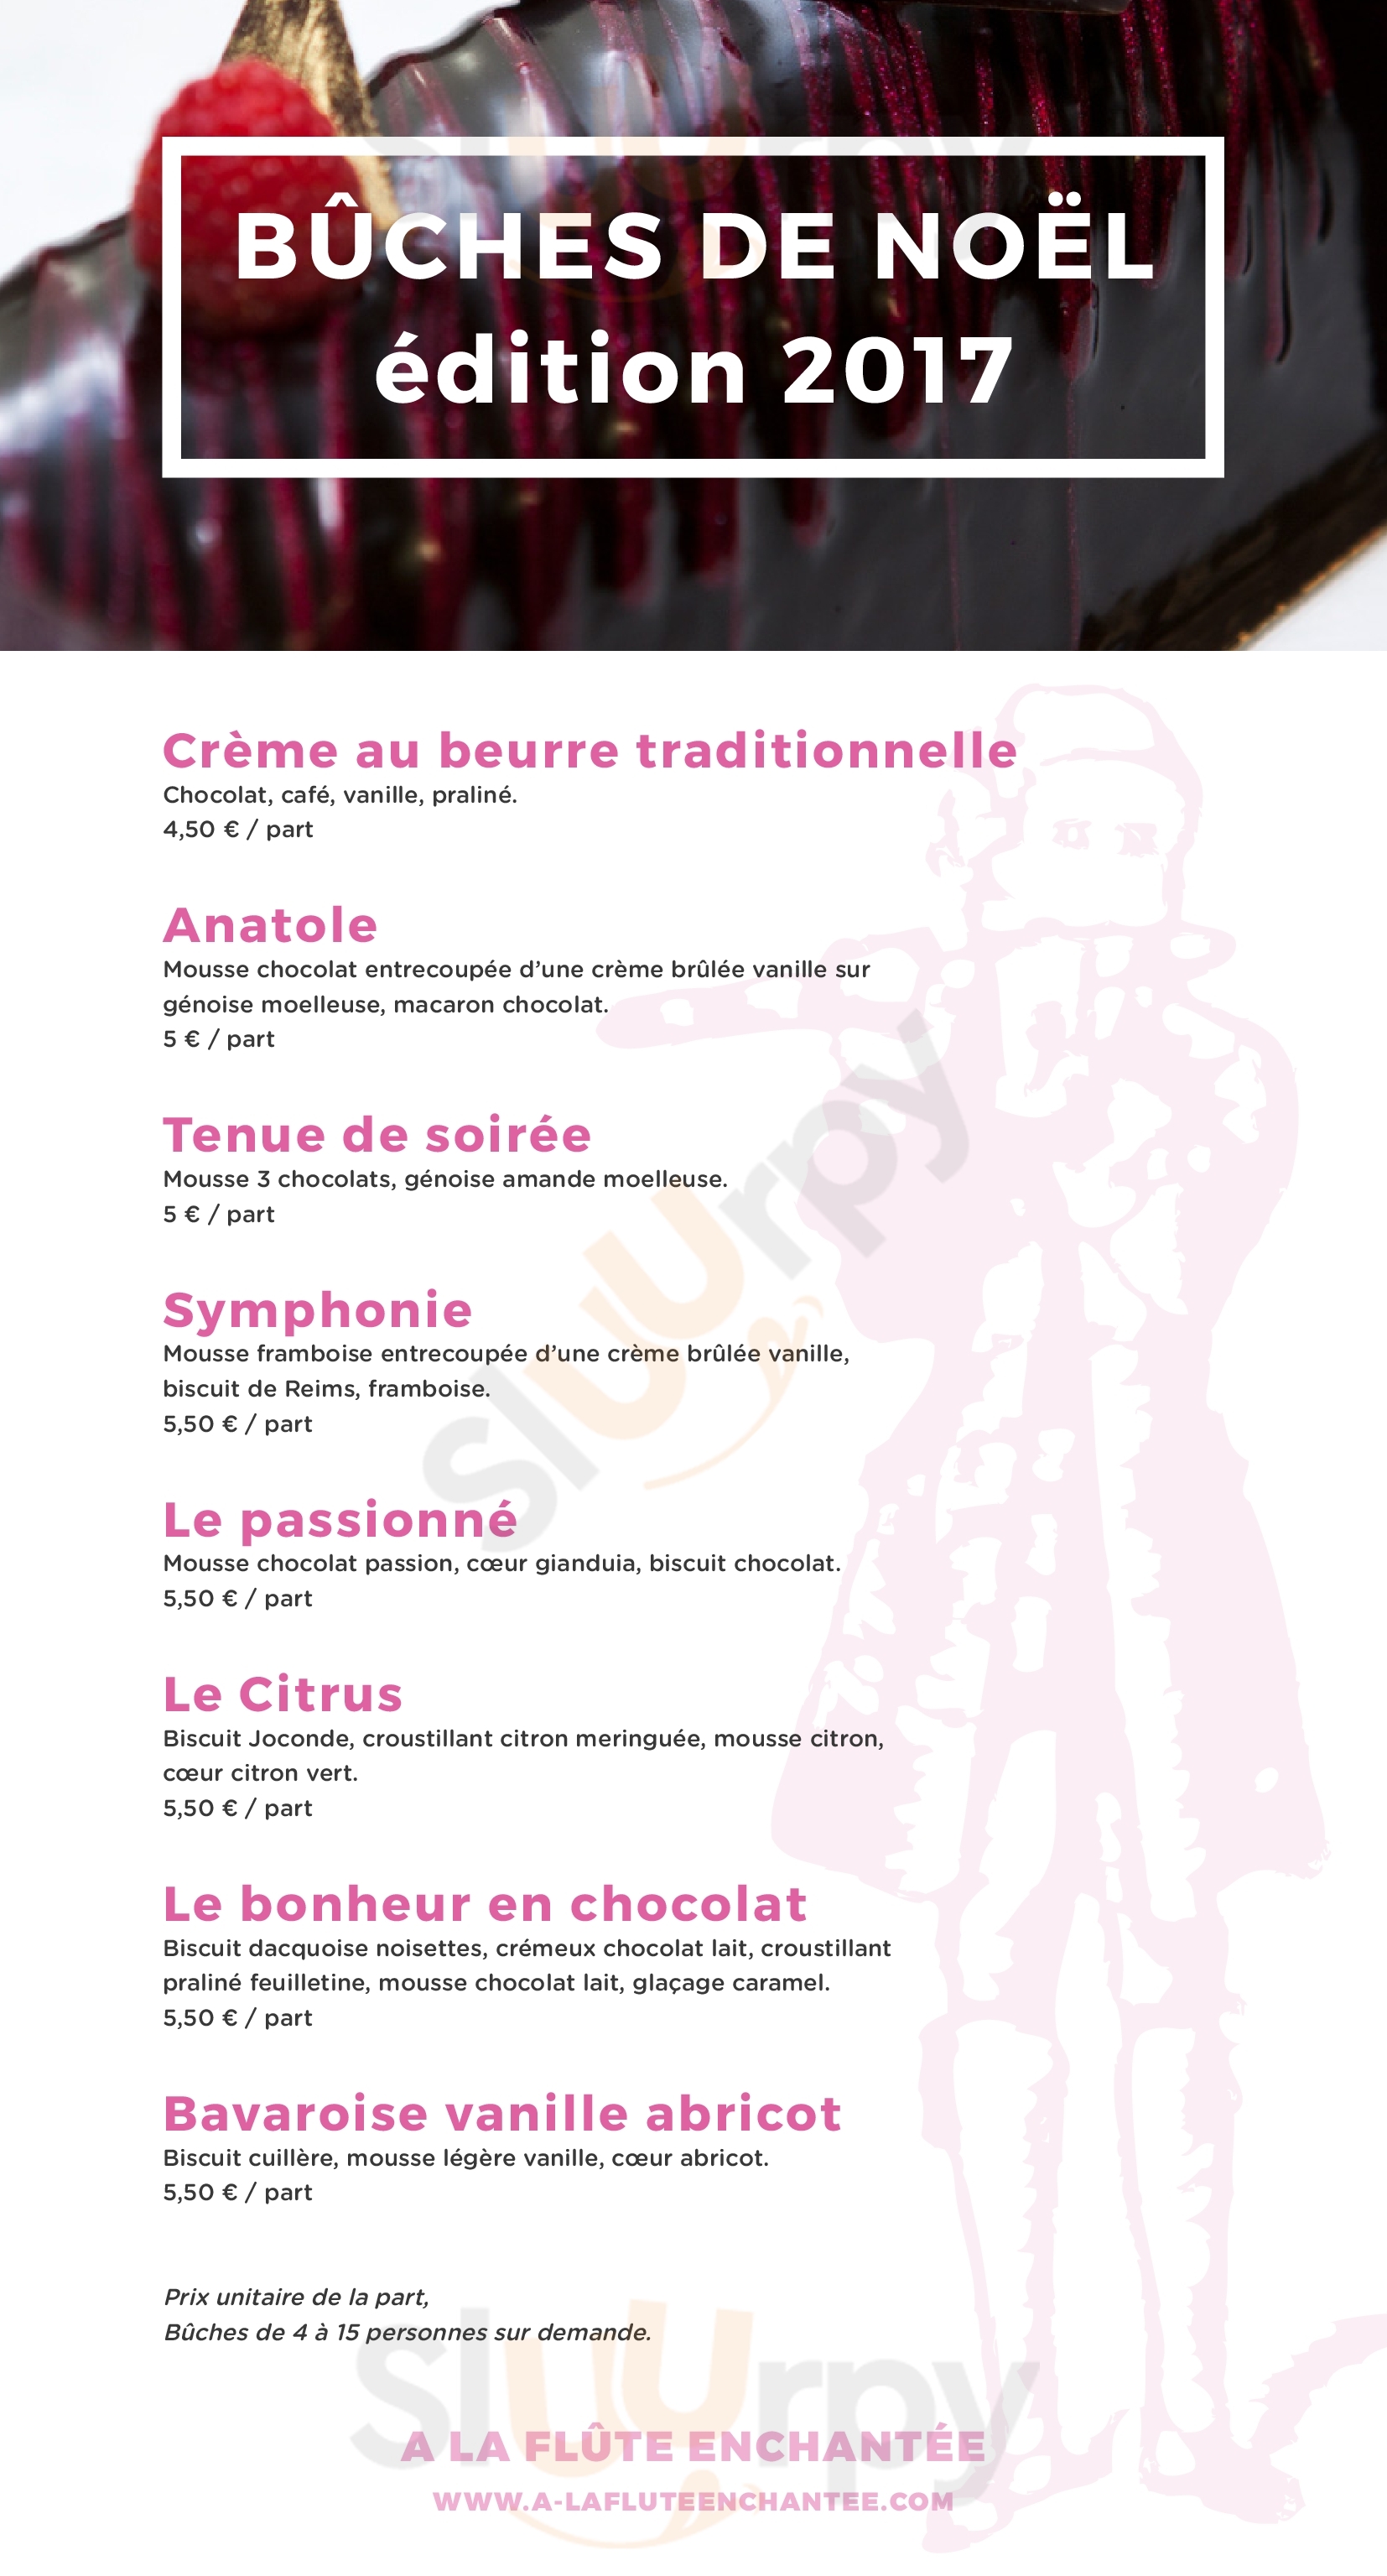 Boulangerie - Patisserie A La Flute Enchantee Paris Menu - 1